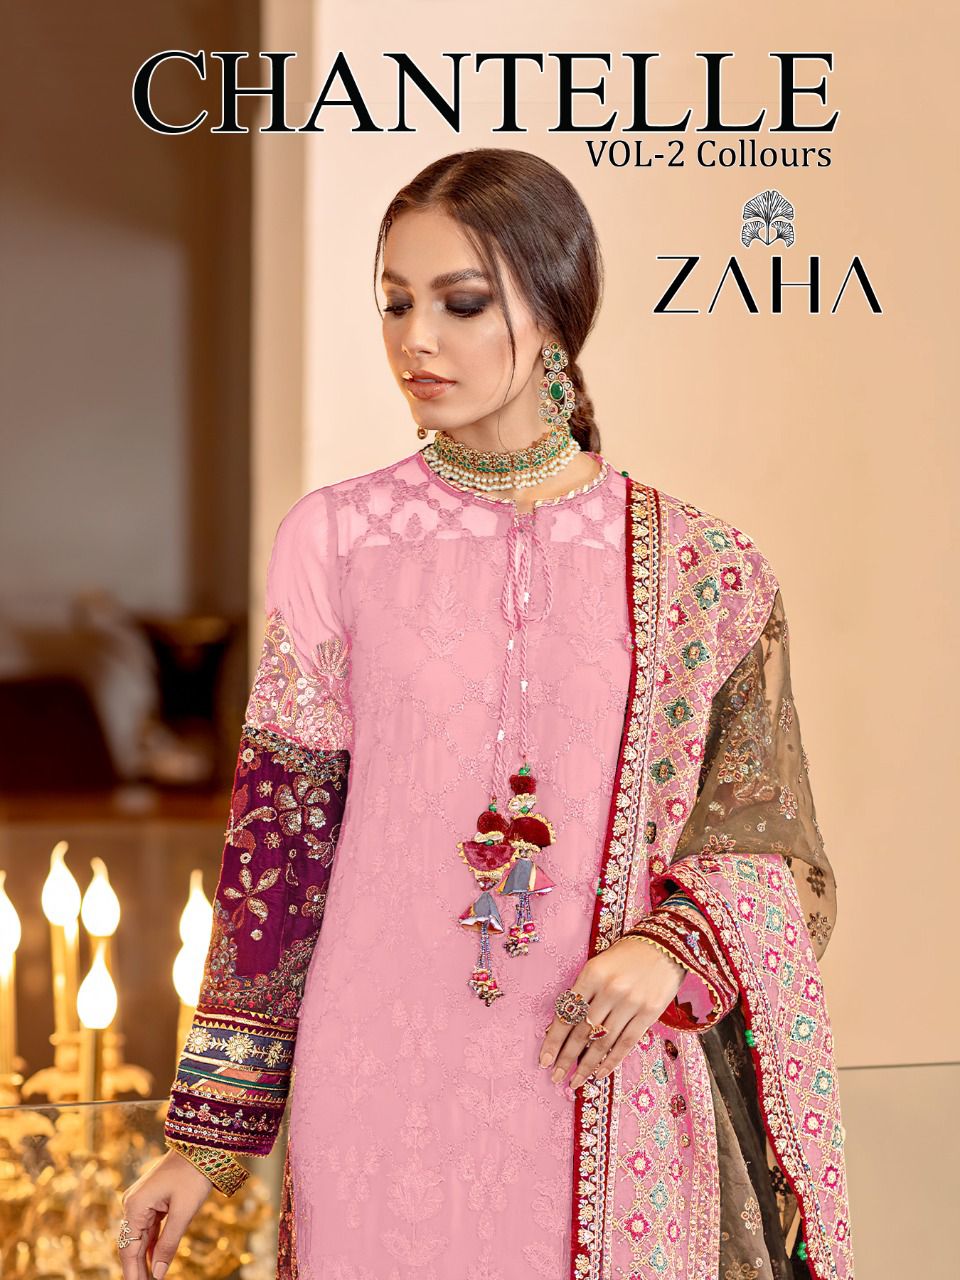 zaha chanterelle vol 2 georgette elegant salwar suit colour set